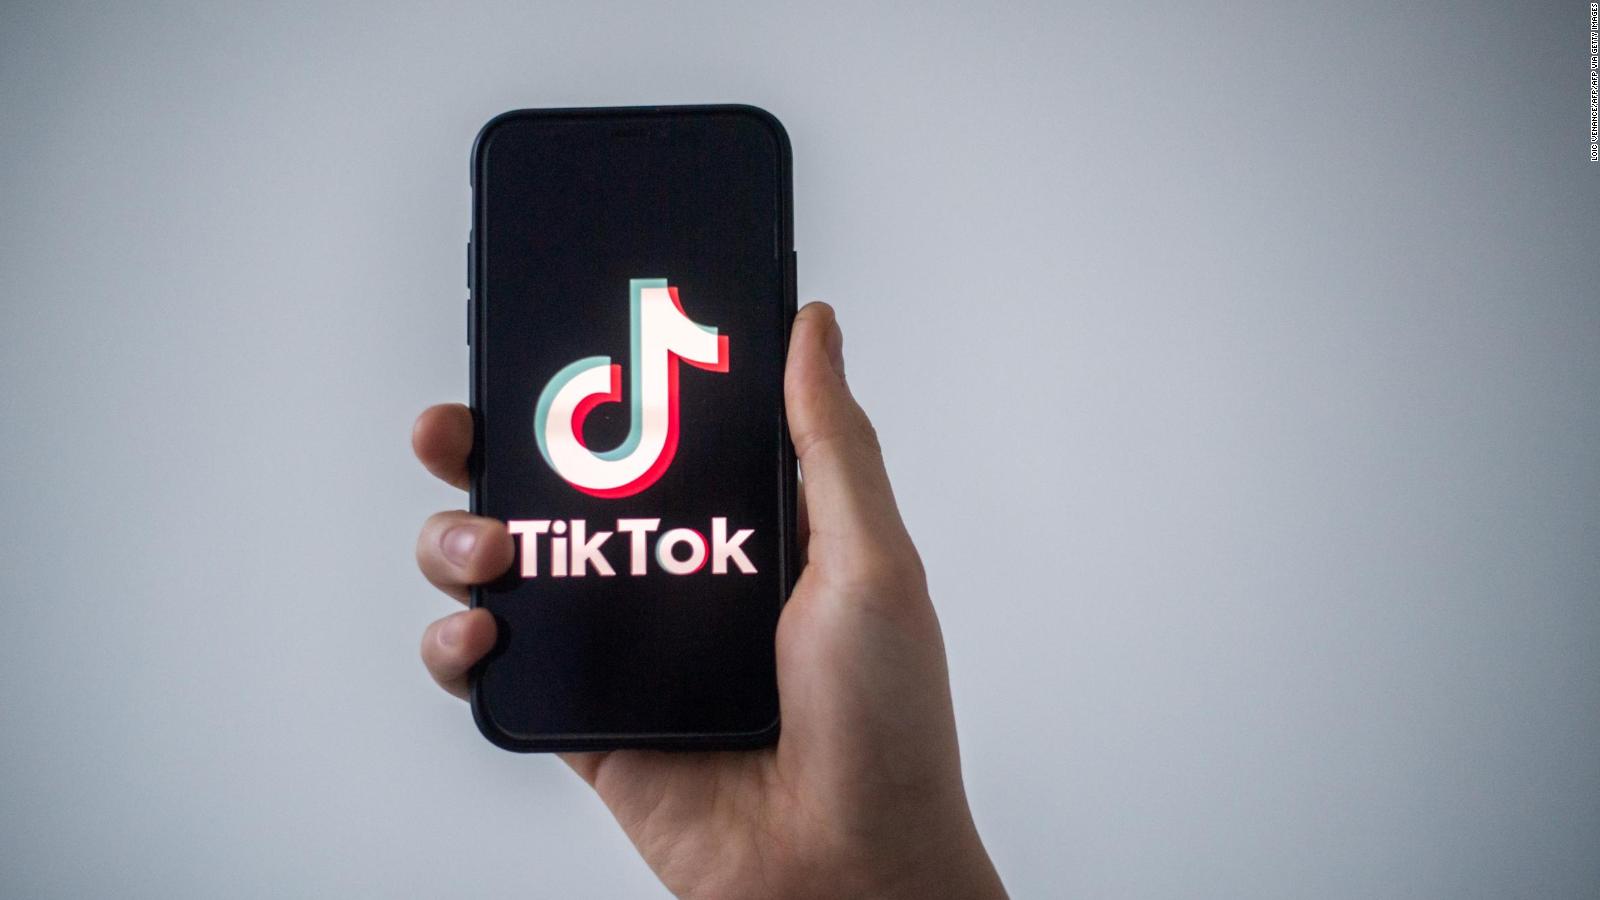 TikTok supera a YouTube en tiempo de visualización promedio